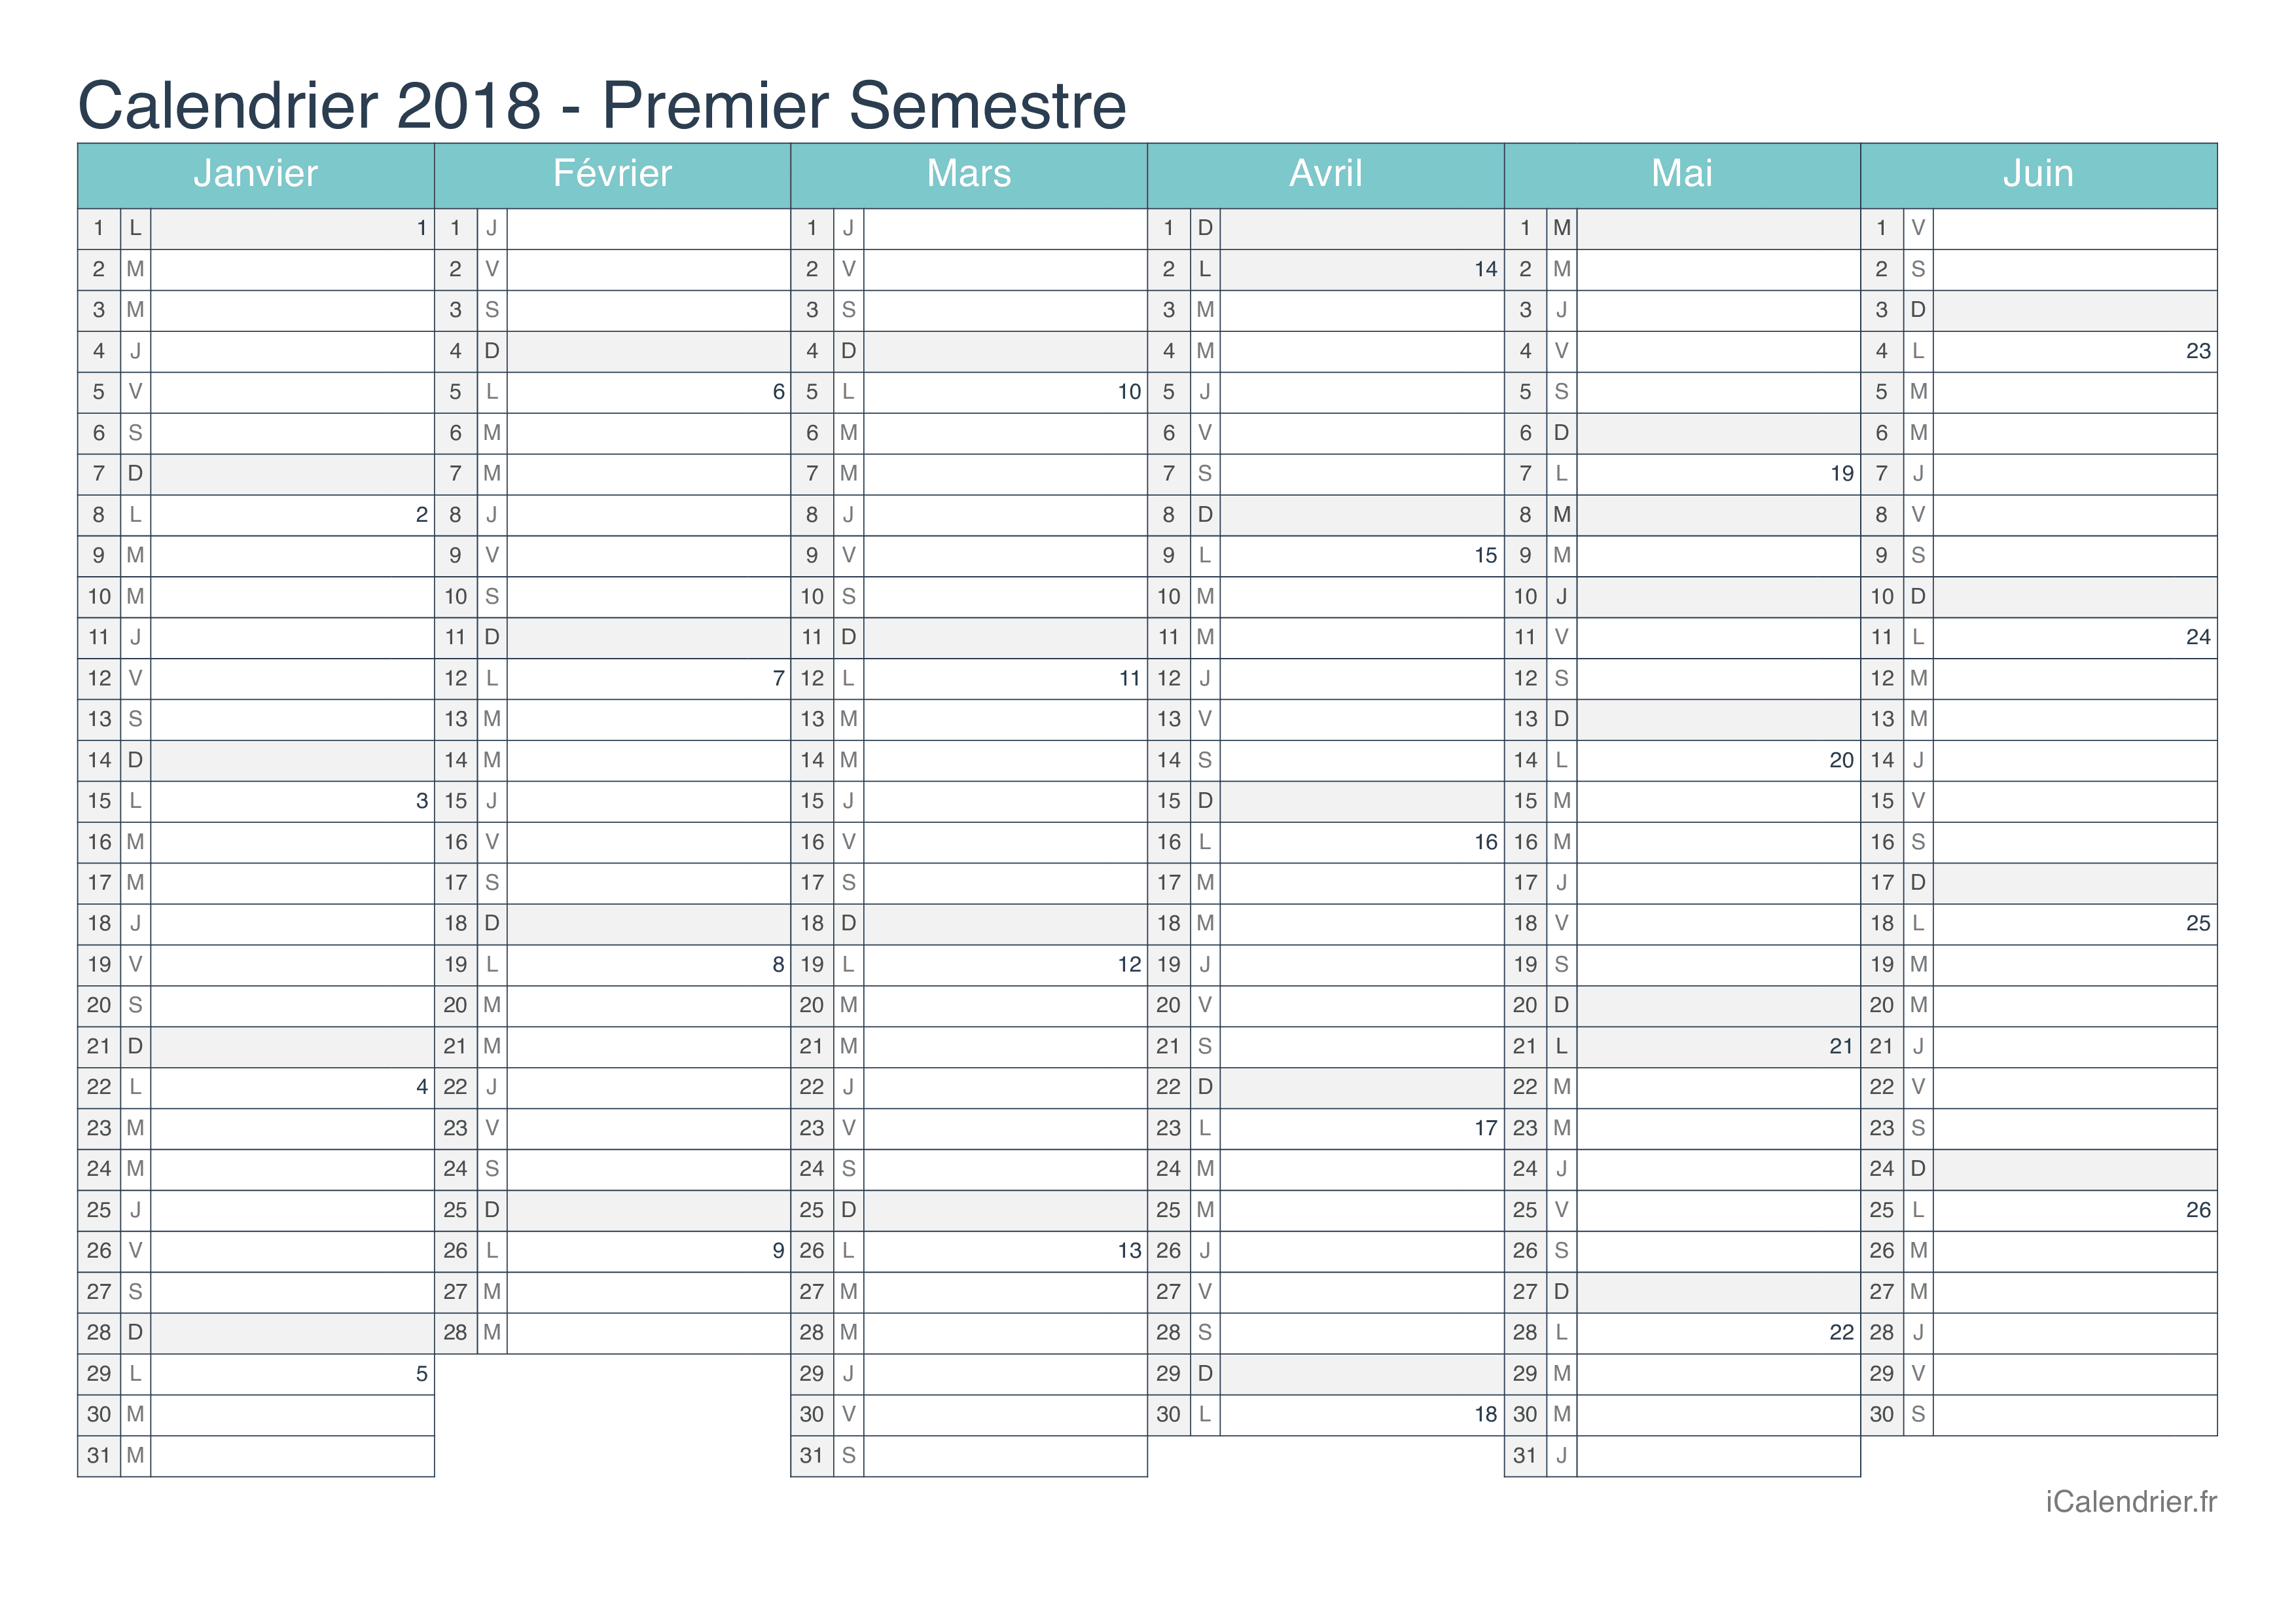 Calendrier par semestre avec numéros des semaines 2018 - Turquoise